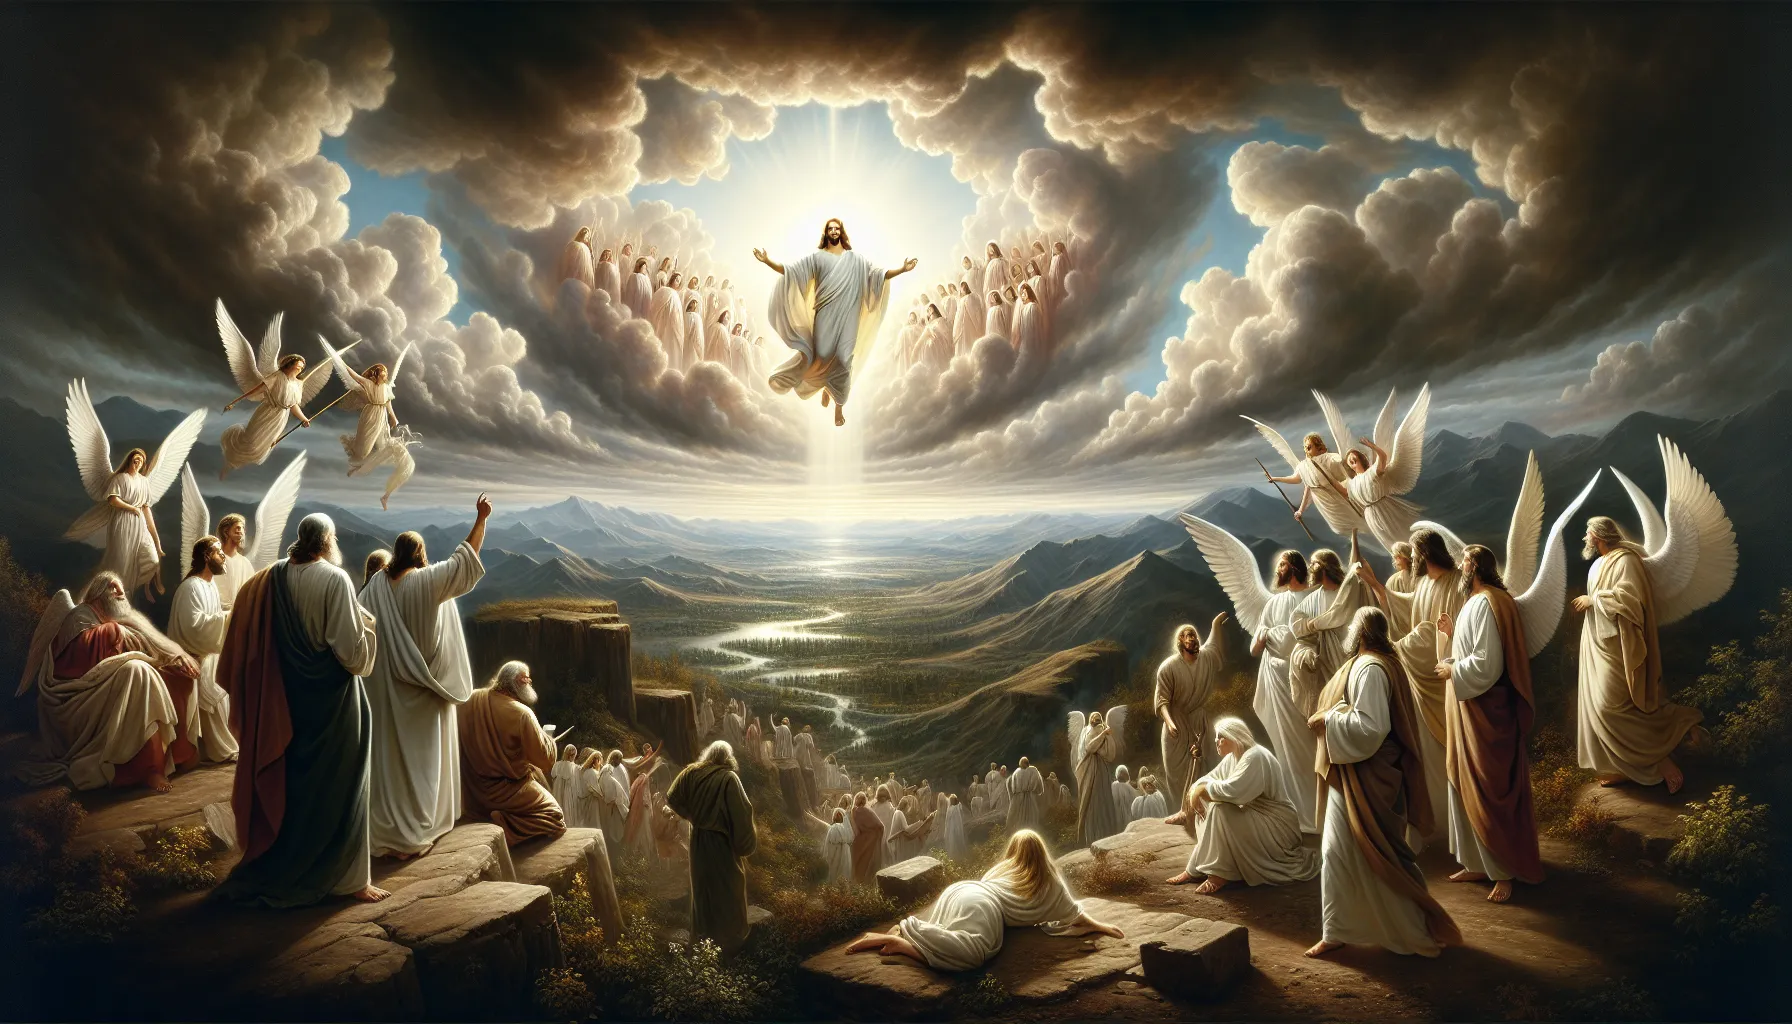 Representación artística de la segunda venida de Jesucristo según la Biblia en un artículo web sobre profecías bíblicas.